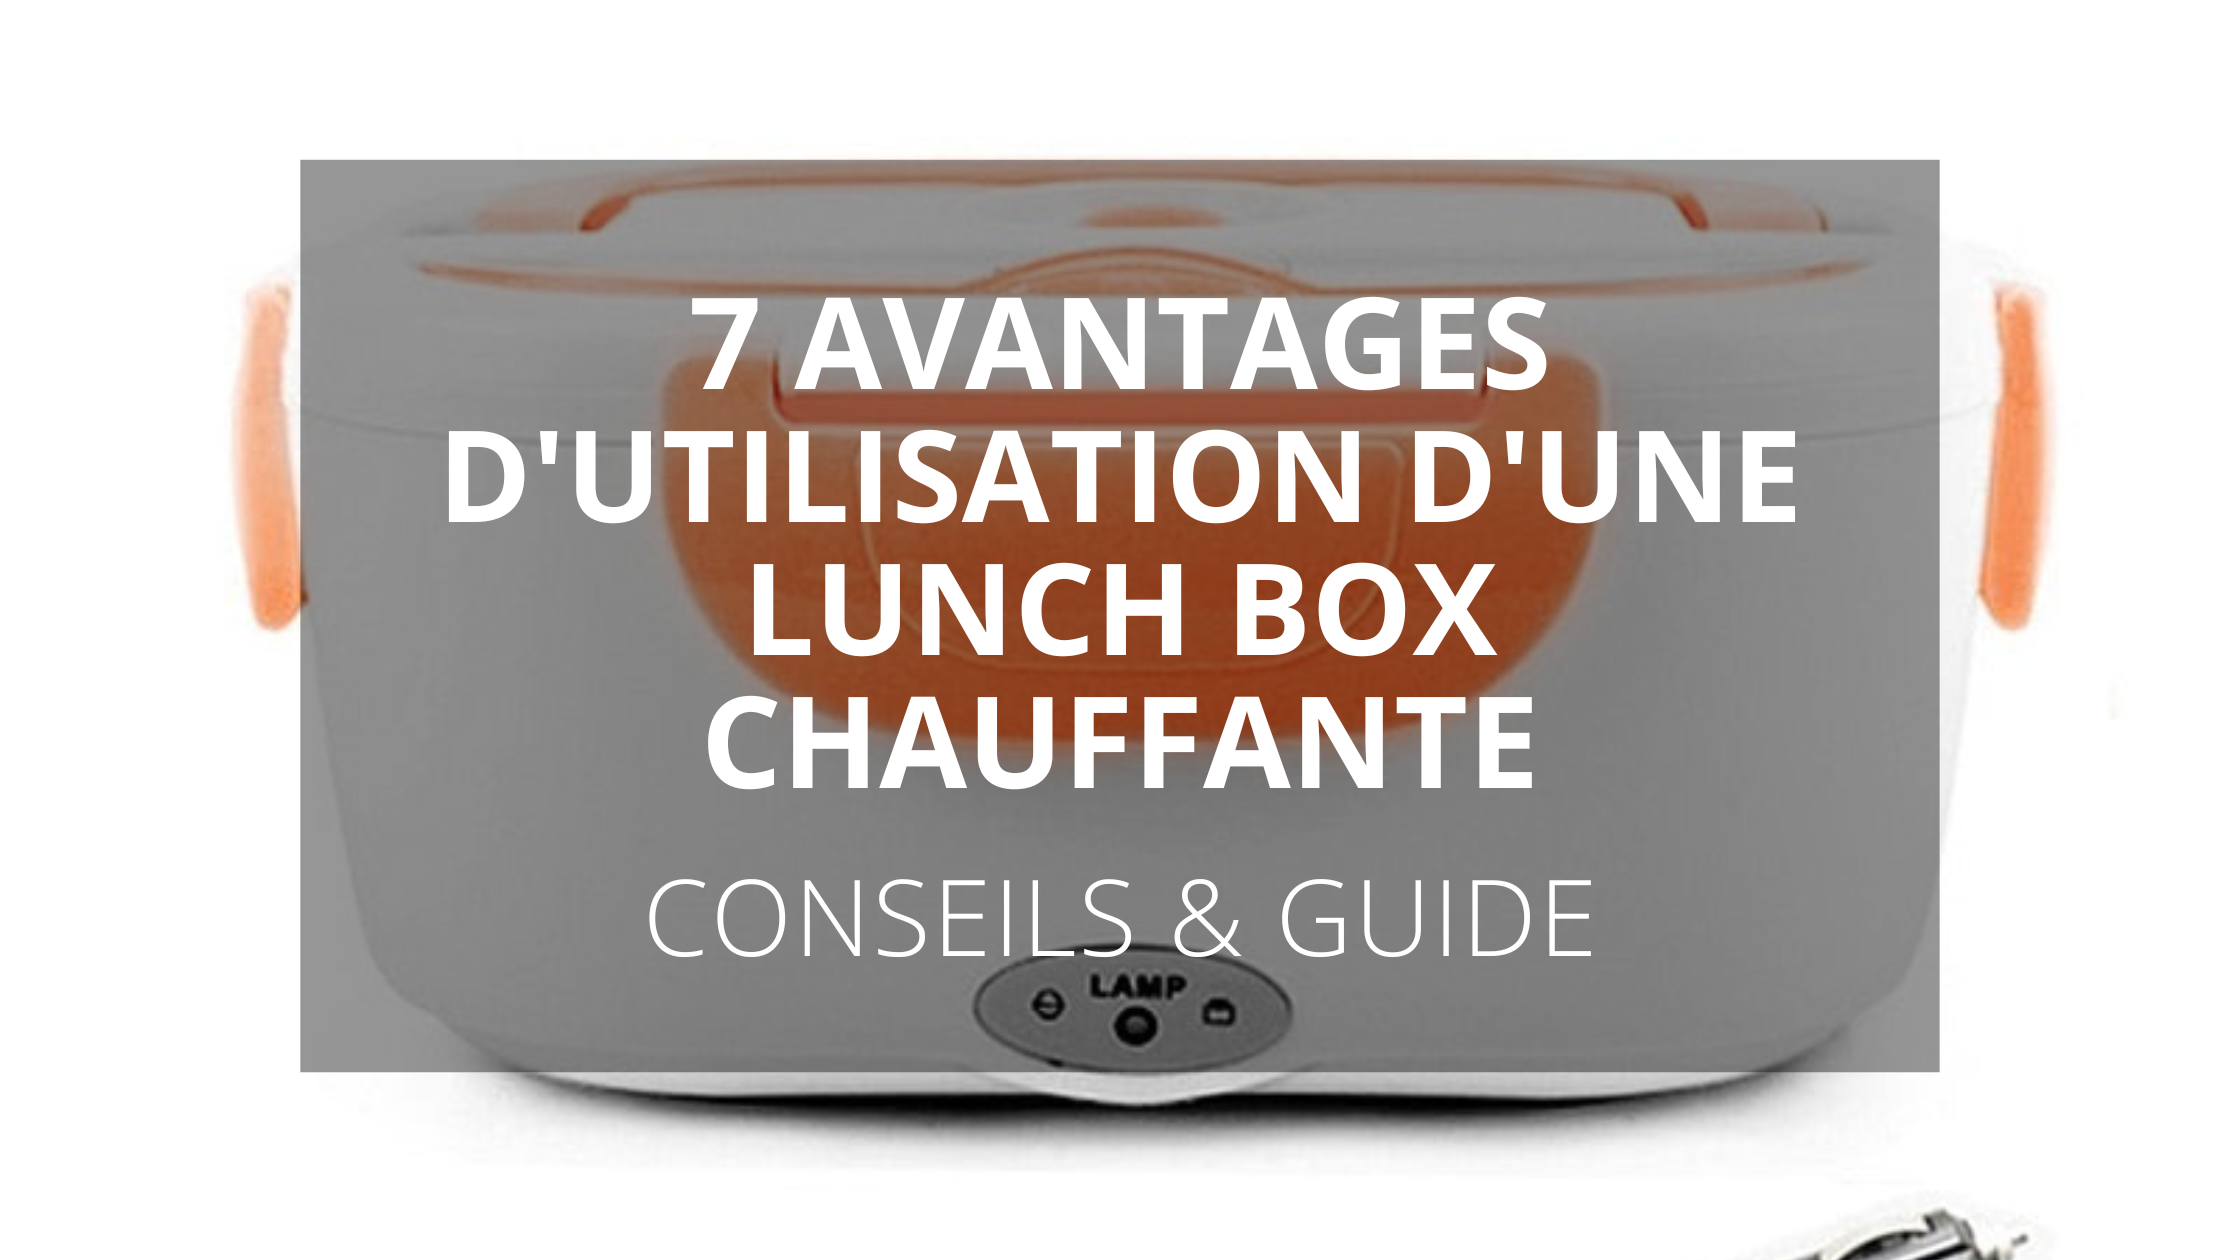 7 Avantages d'utilisation d'une lunch box chauffante